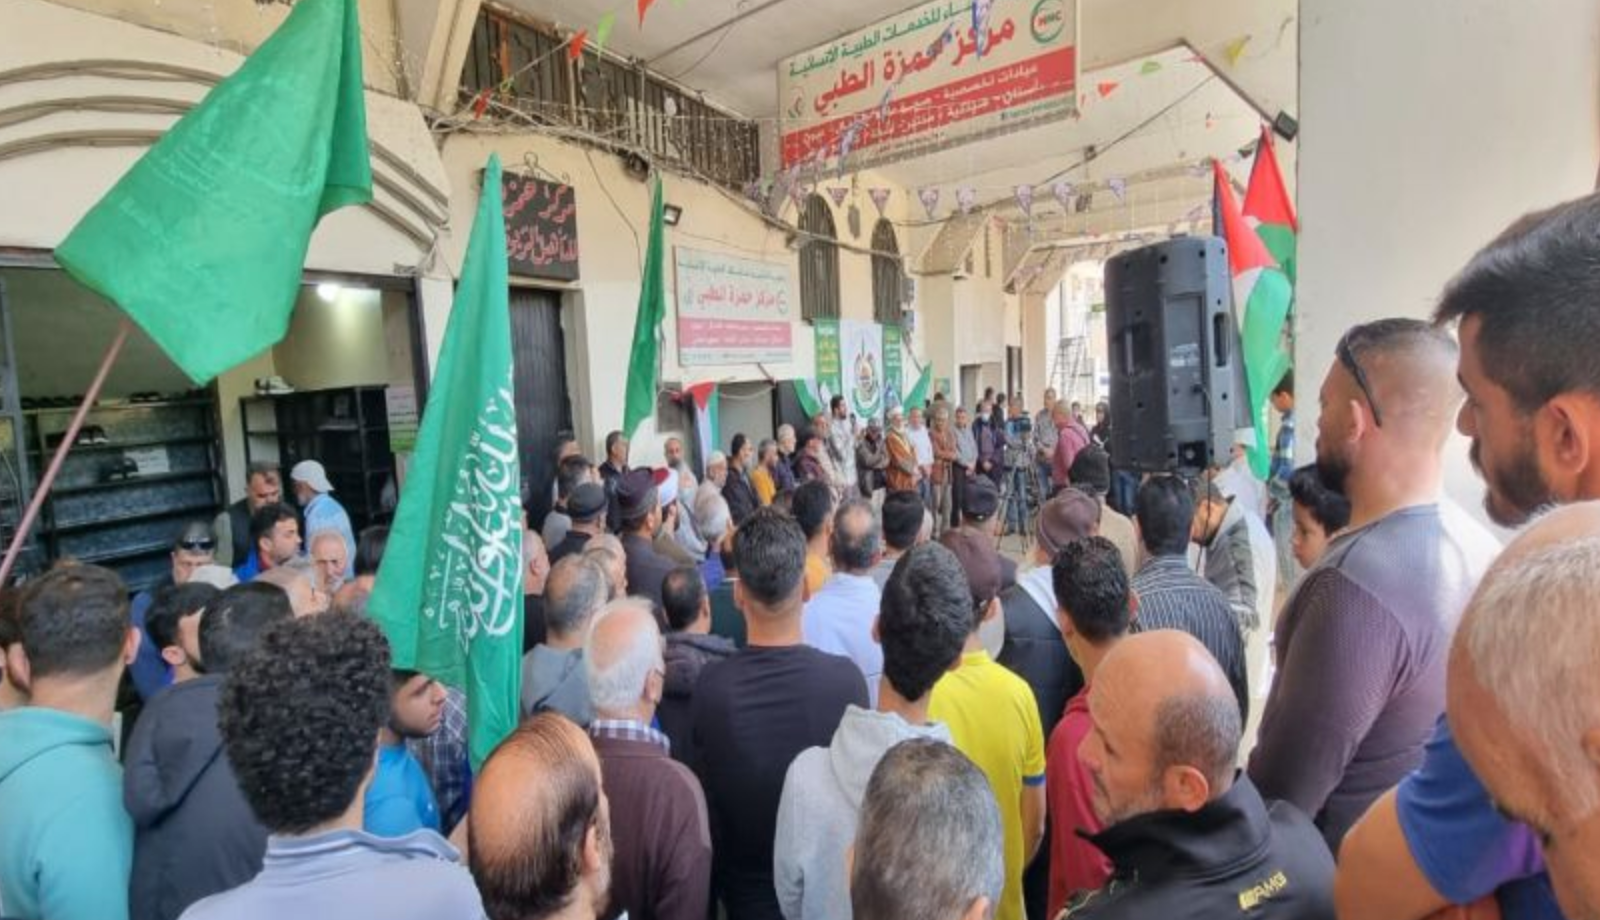 حماس تنظم وقفة تضامنية مع الأسرى والأقصى في لبنان